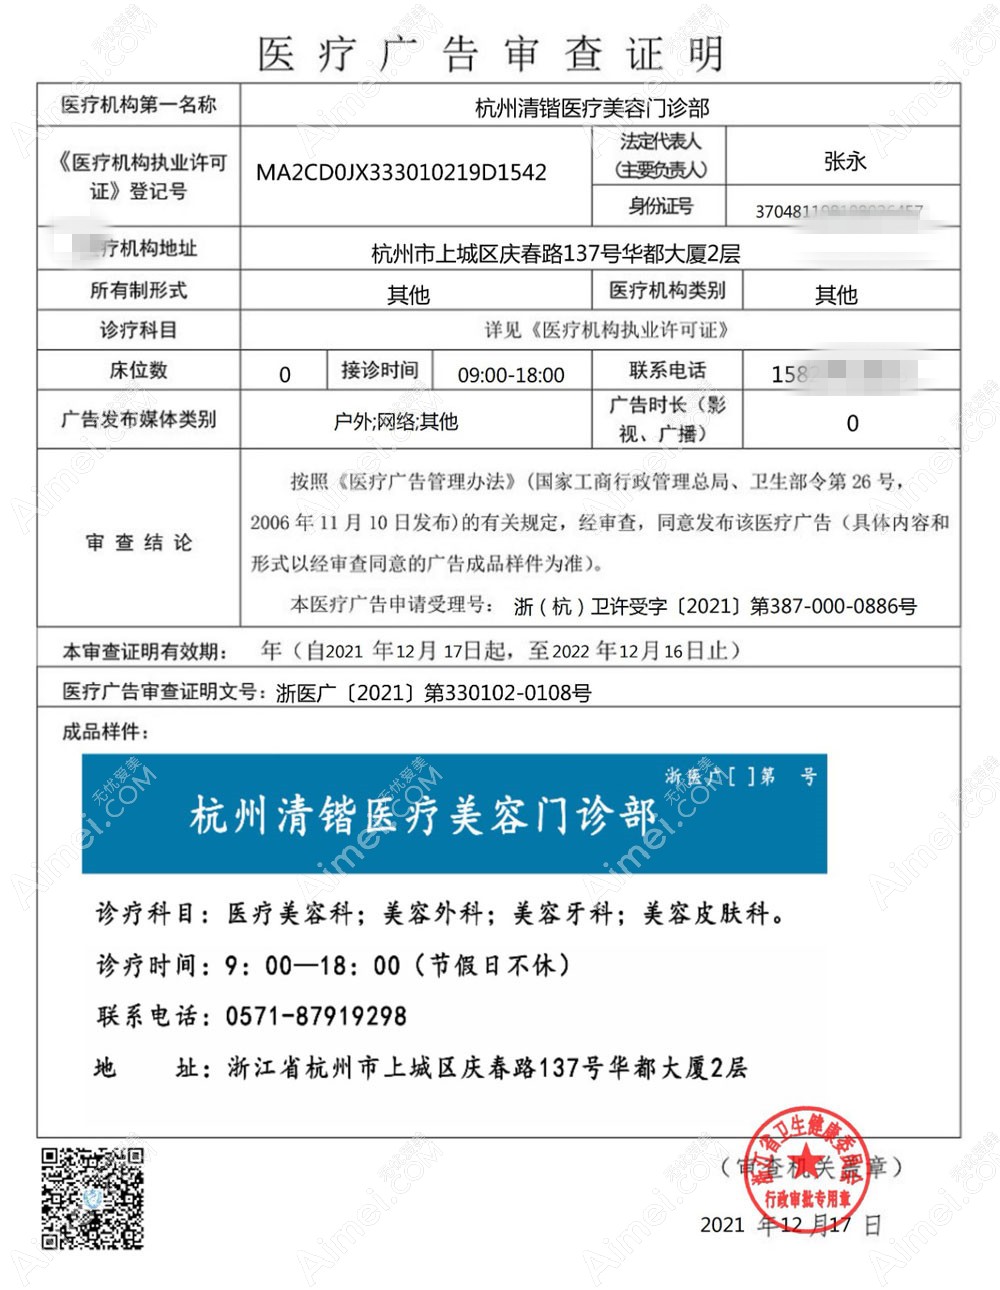 杭州清锴医疗美容门诊部医疗广告审查证明